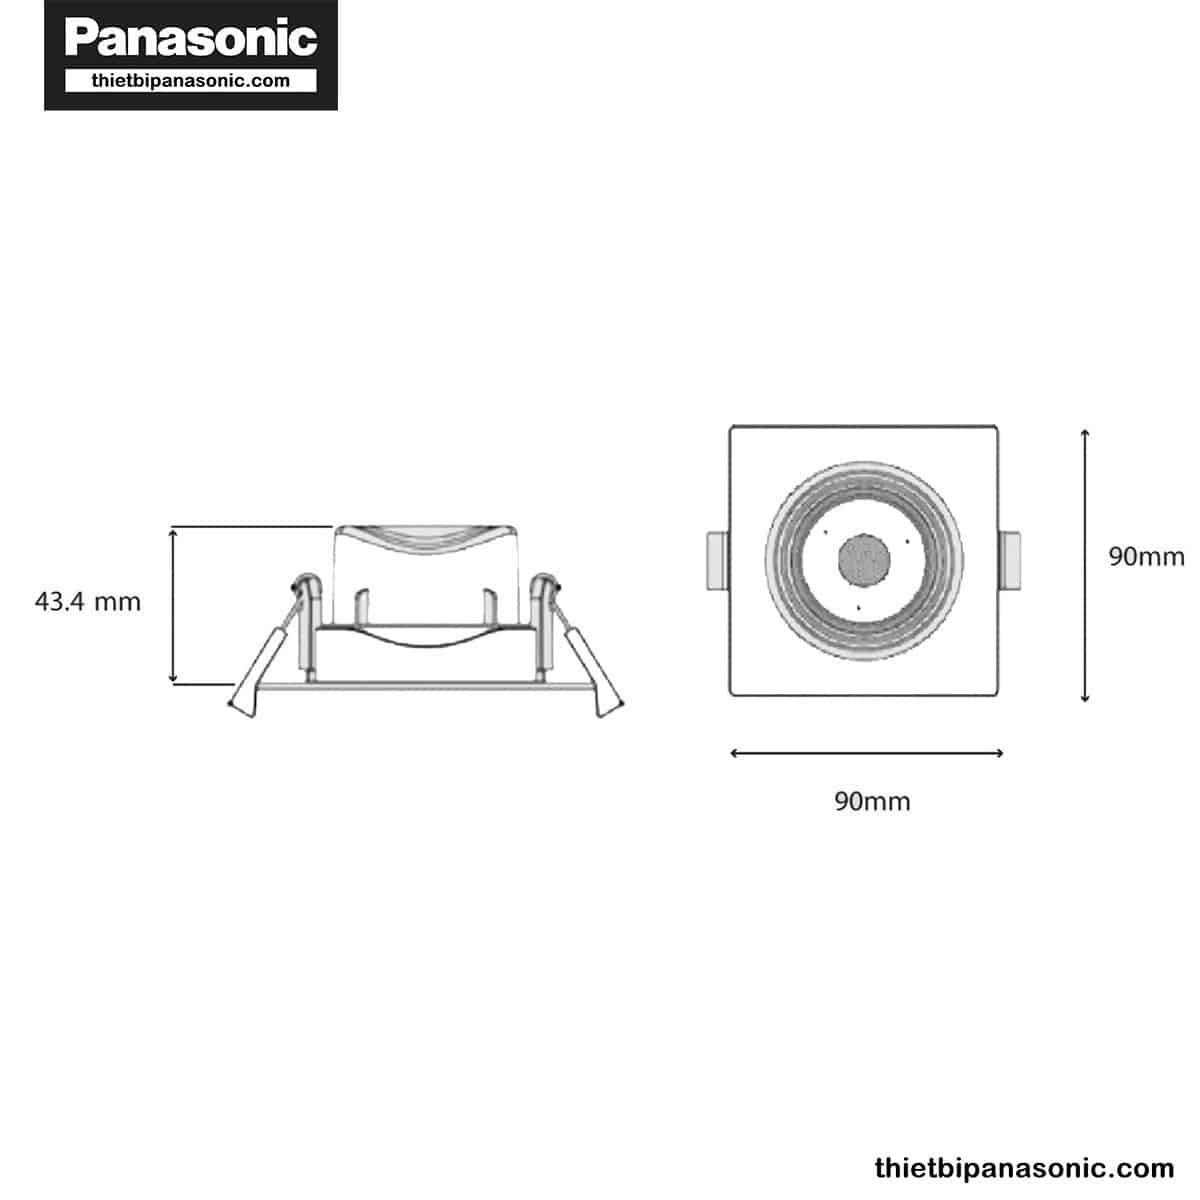 Bản vẽ kích thước của đèn âm trần chỉnh góc Panasonic 5W vuông, góc chiếu 38° NNNC7630688 (ánh sáng vàng), NNNC7631688 (ánh sáng trung tính), NNNC7635688 (ánh sáng trắng)